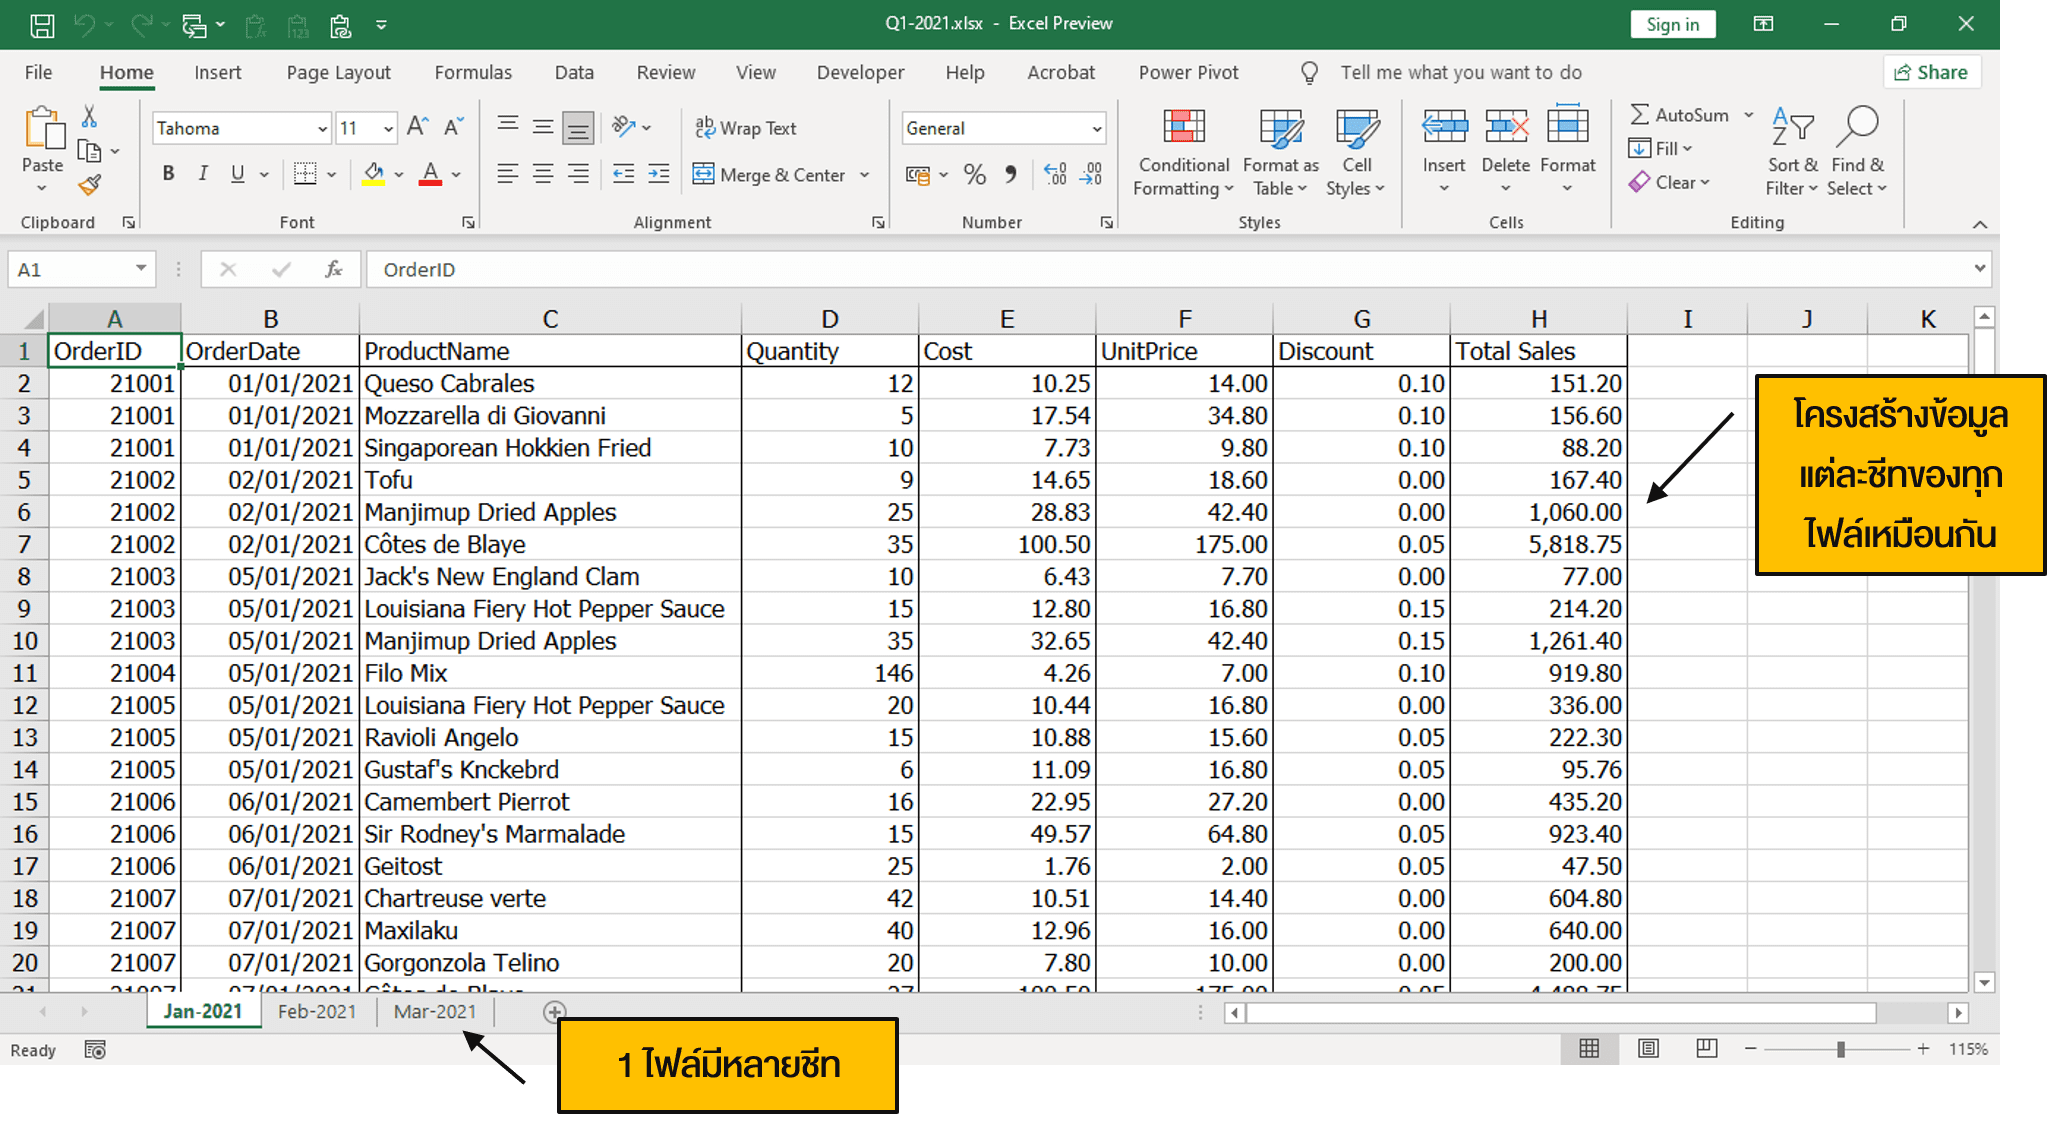 ข้อมูลภายใน Excel ที่มีหลายชีท และมีโครงสร้างแต่ละชีทเหมือนกัน